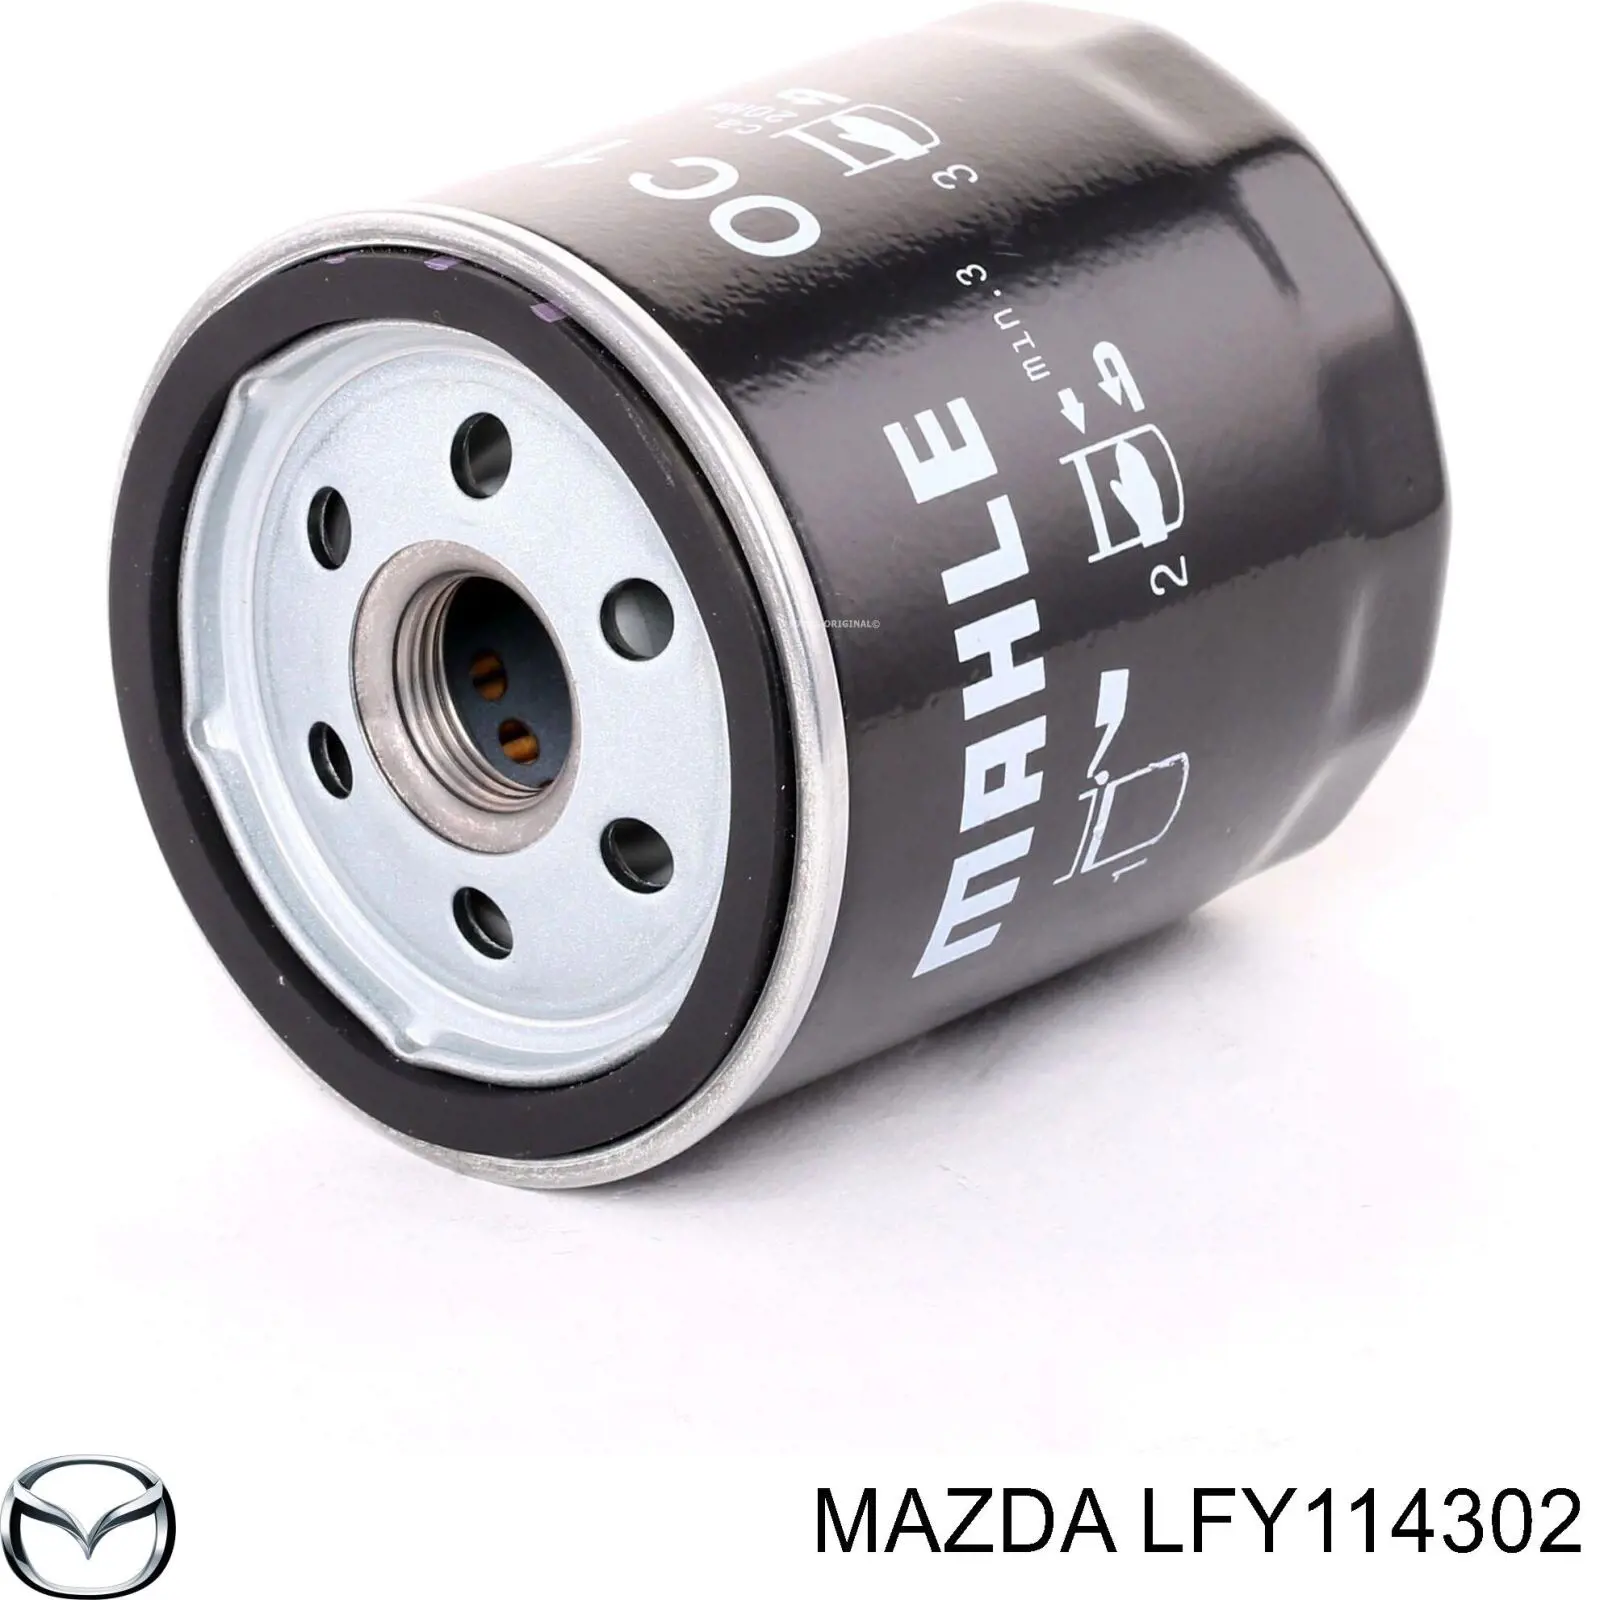 LFY114302 Mazda filtro de aceite